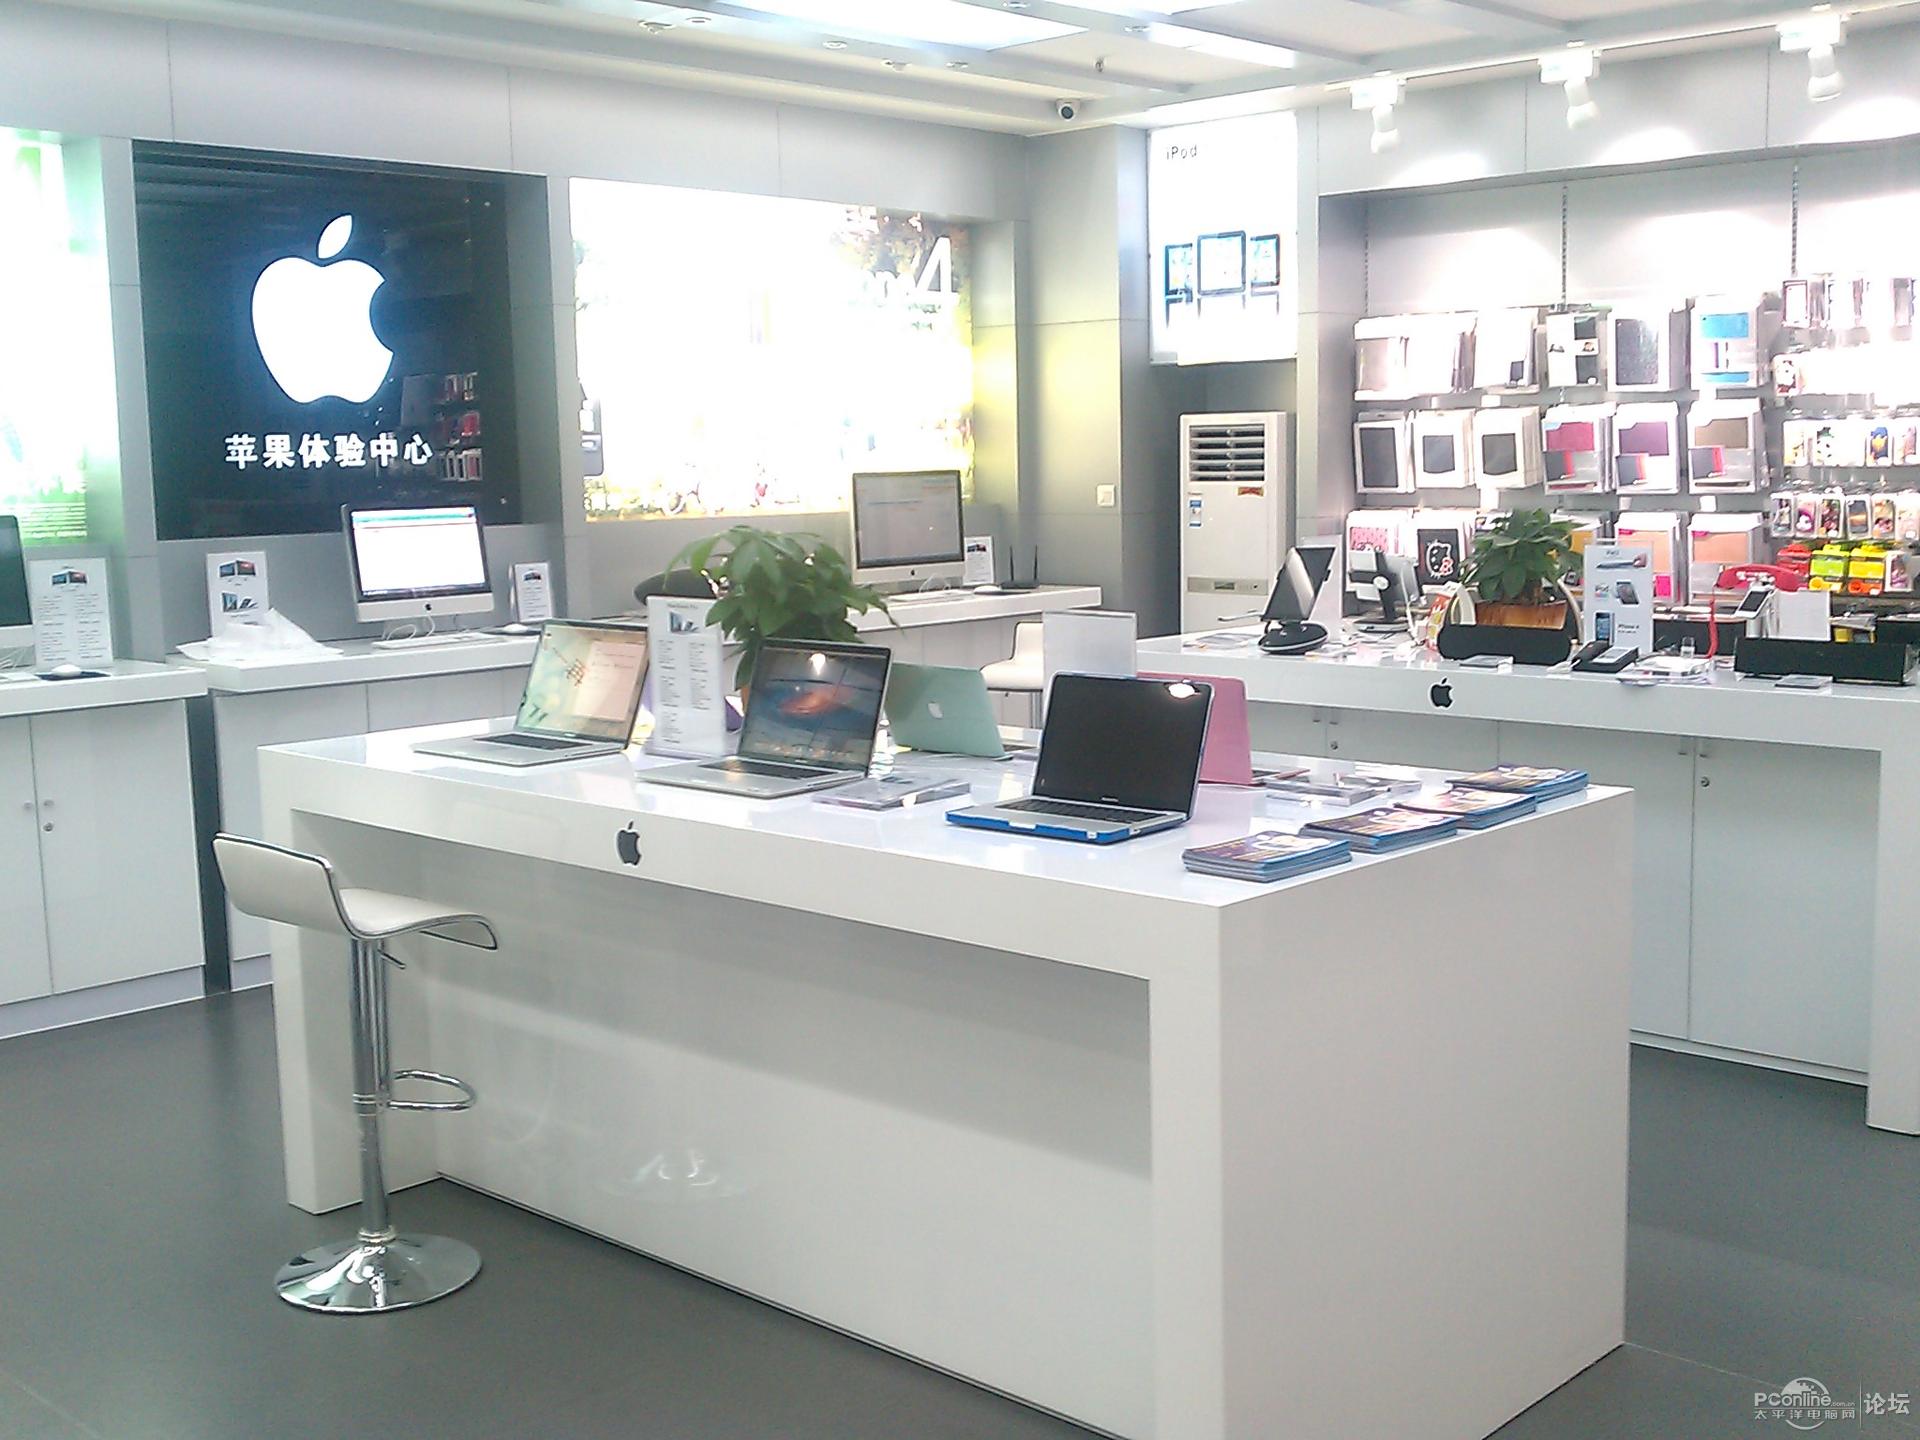 在苹果专卖店买的苹果手机跟在外面的卖手机的店里买苹果有什么区别啊